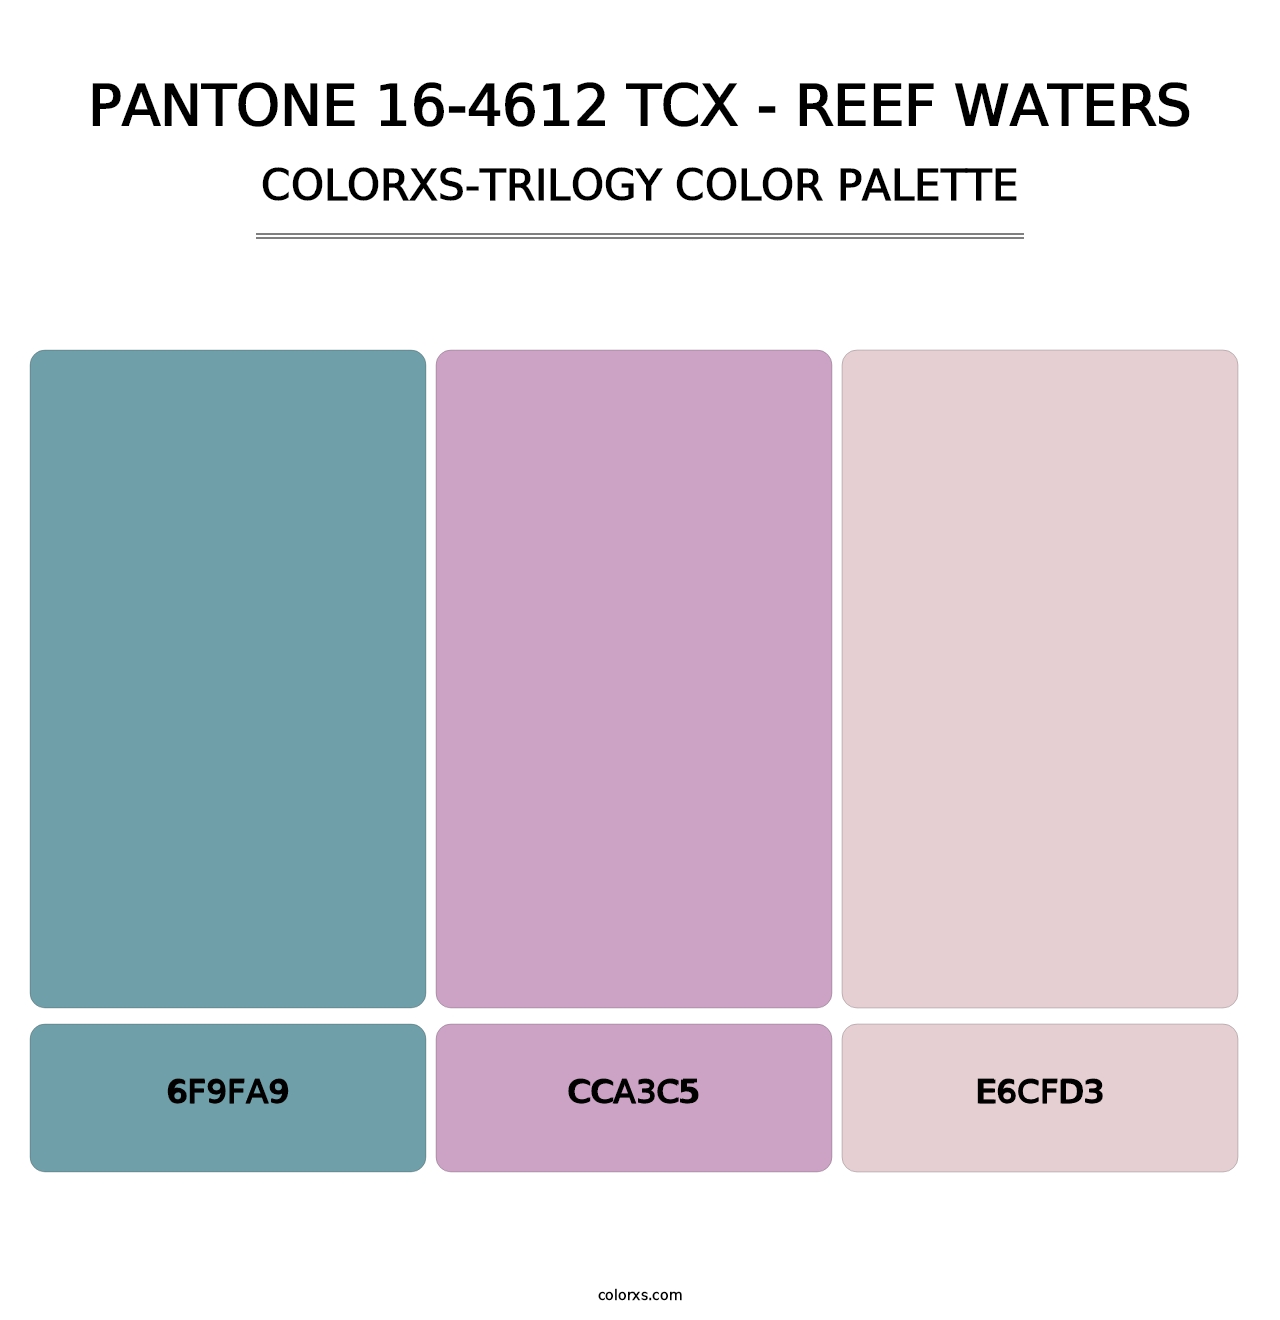 PANTONE 16-4612 TCX - Reef Waters - Colorxs Trilogy Palette